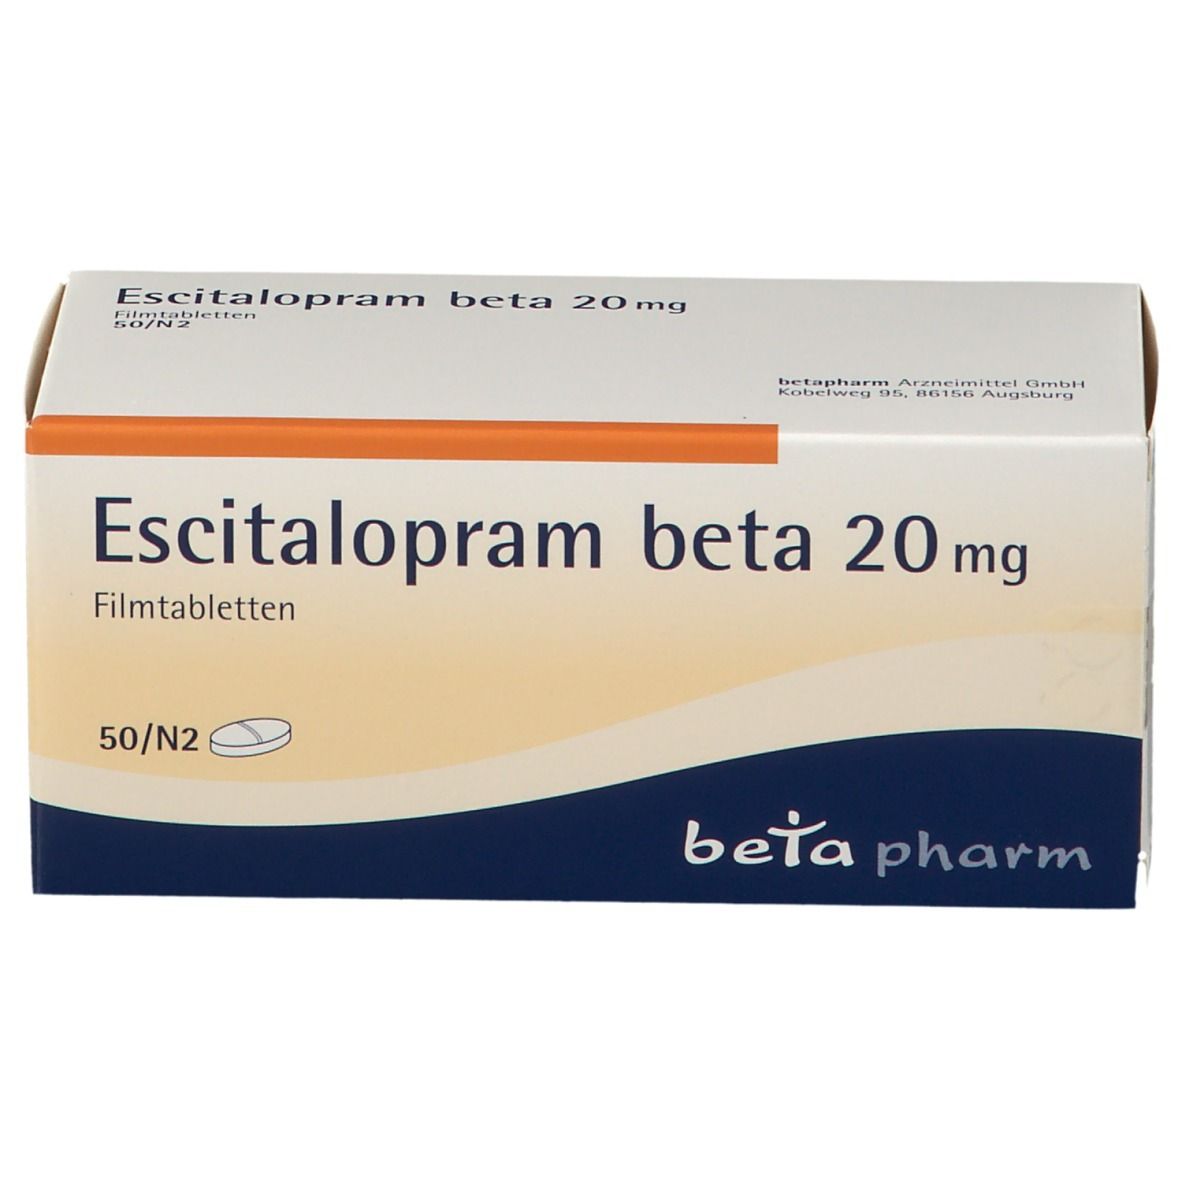 Escitalopram beta 20 mg